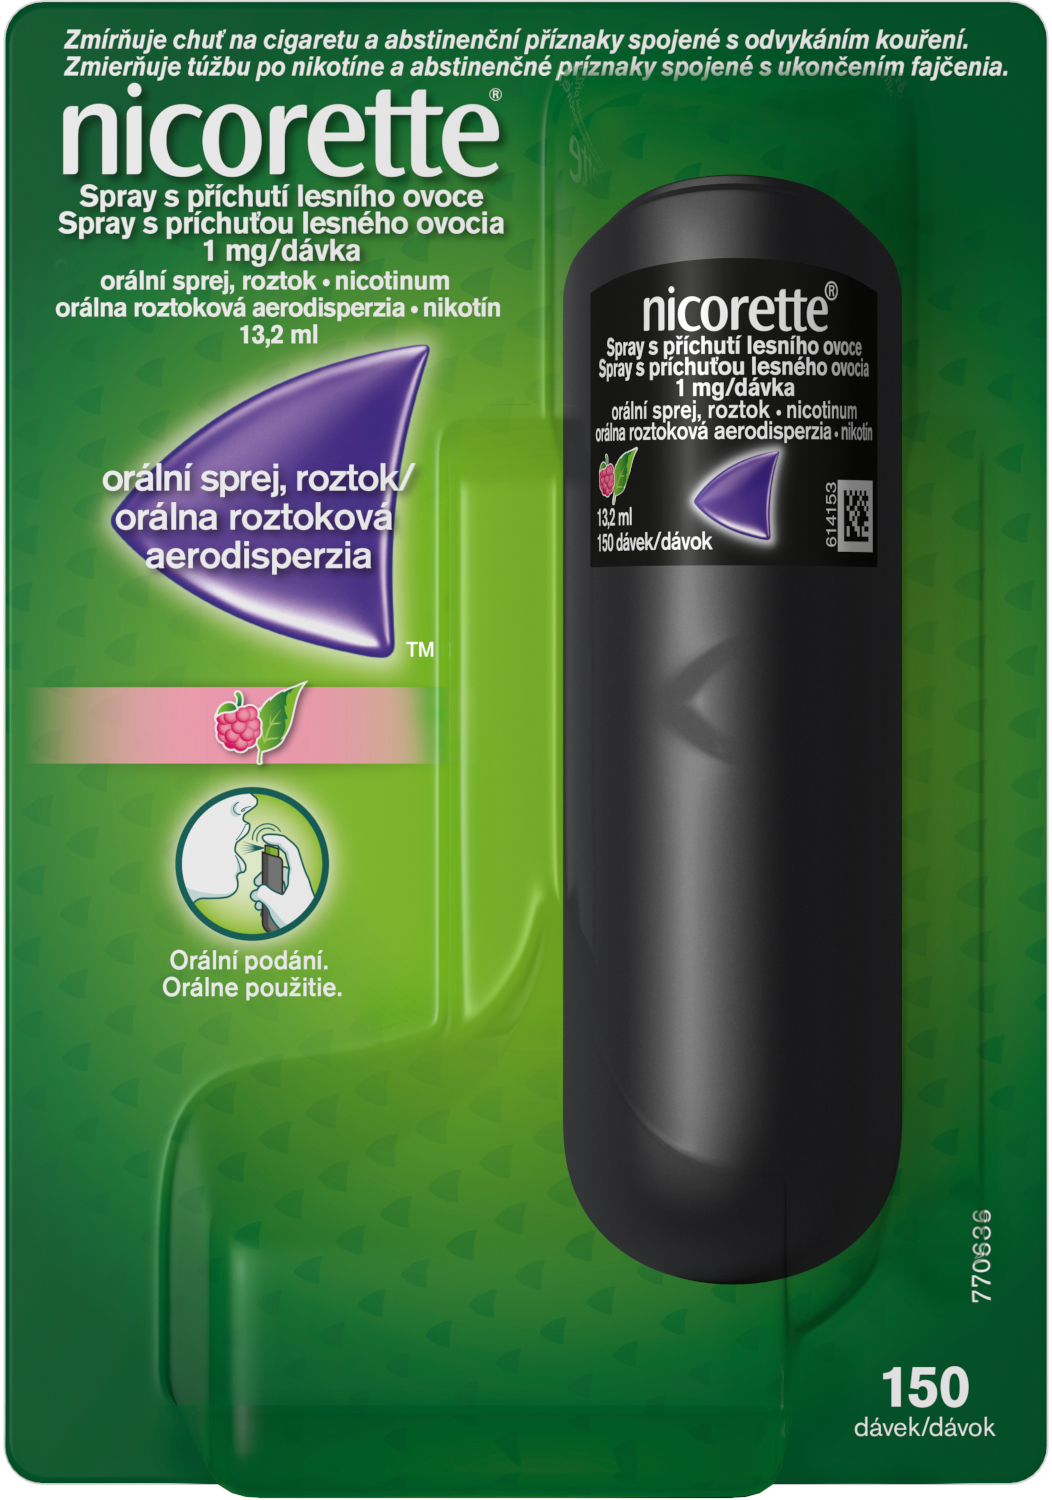 Nicorette Spray s příchutí lesního ovoce 1 mg/dáv orm.spr.sol. 1 x 13,2 ml